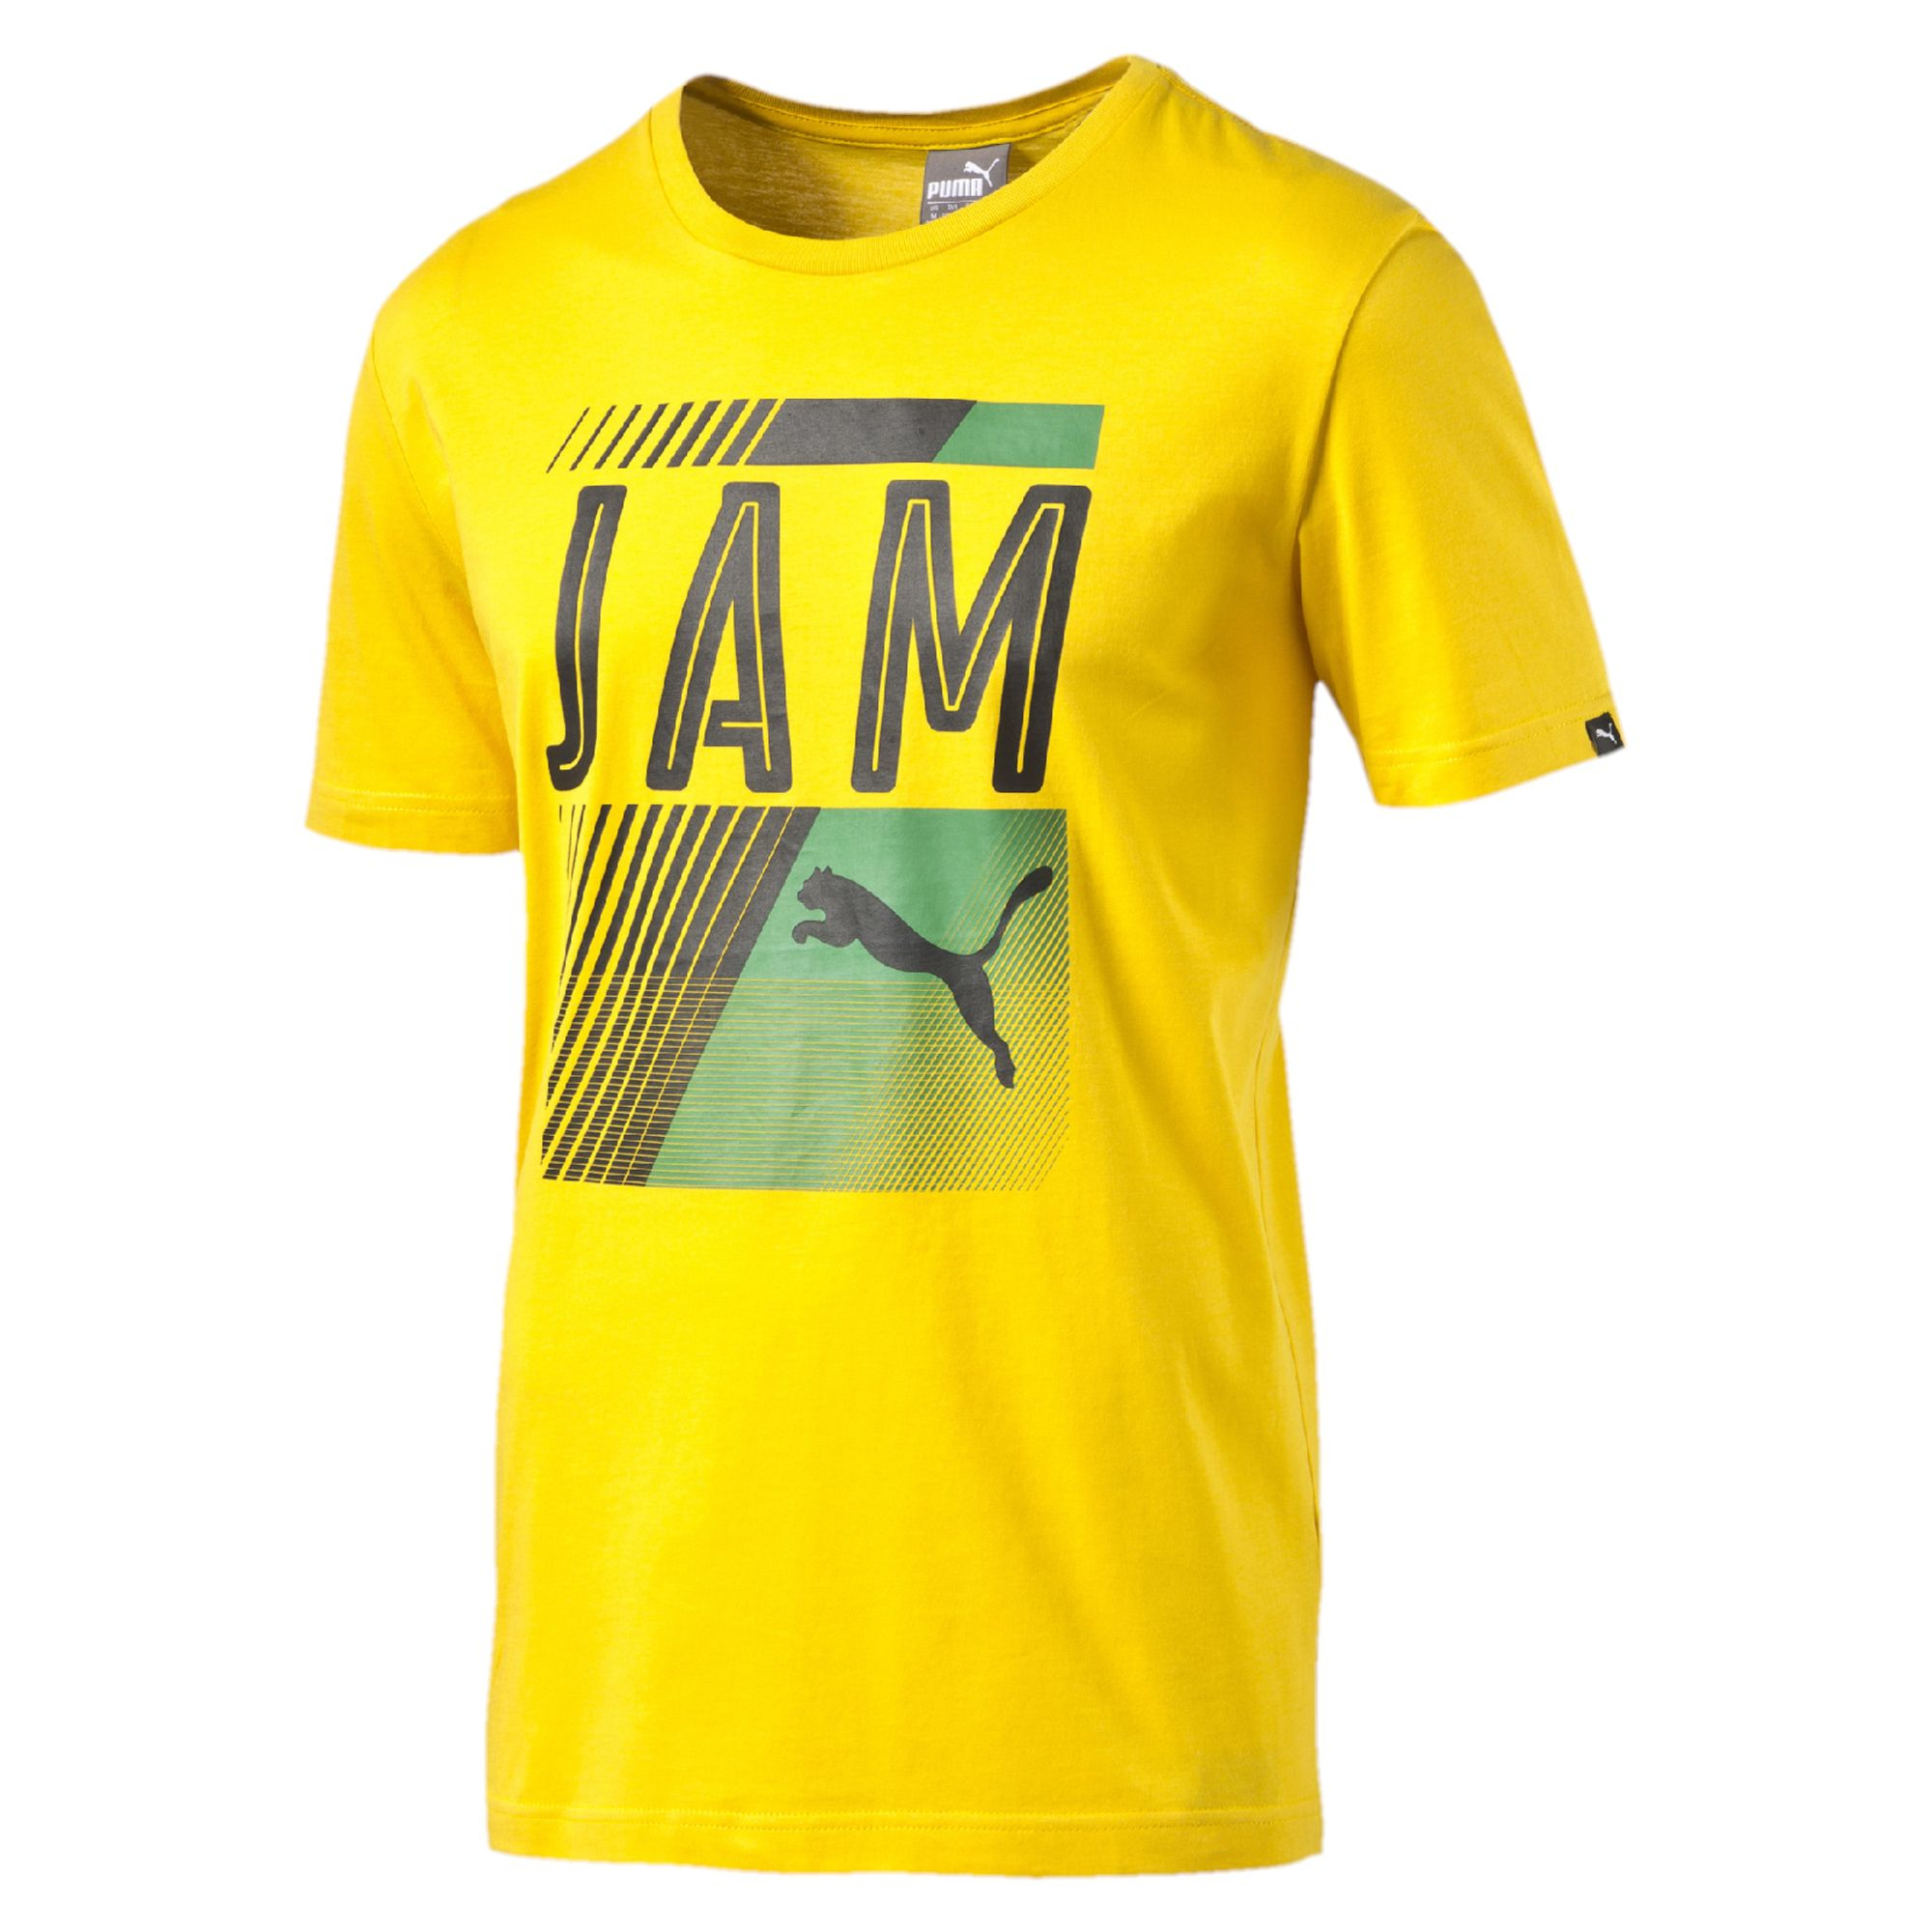 puma jamaica t shirt